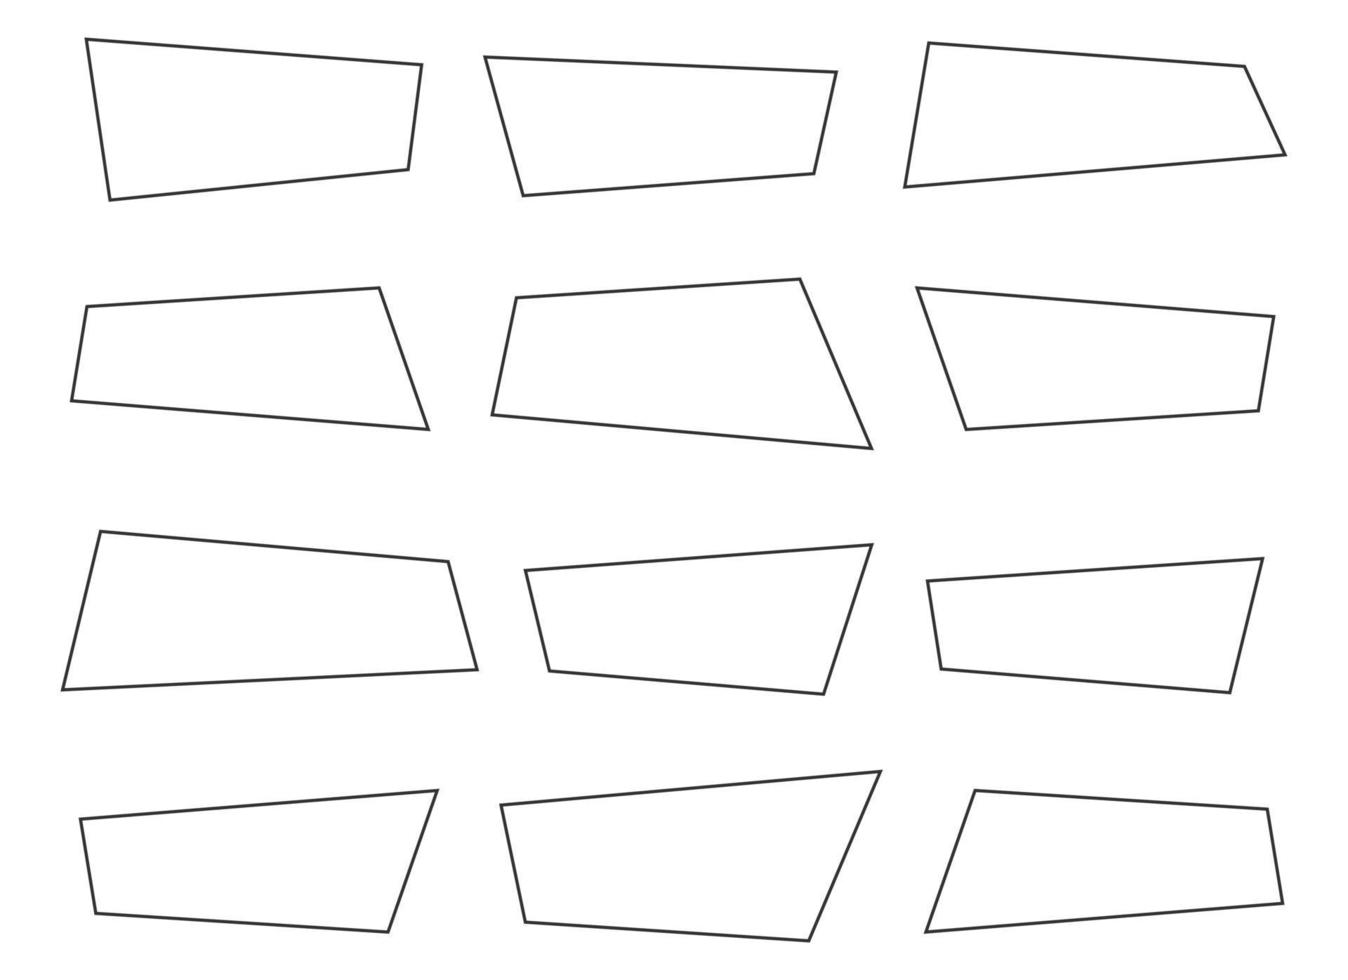 geometrisk linje banderoller i platt stil vektor illustration isolerat på vit